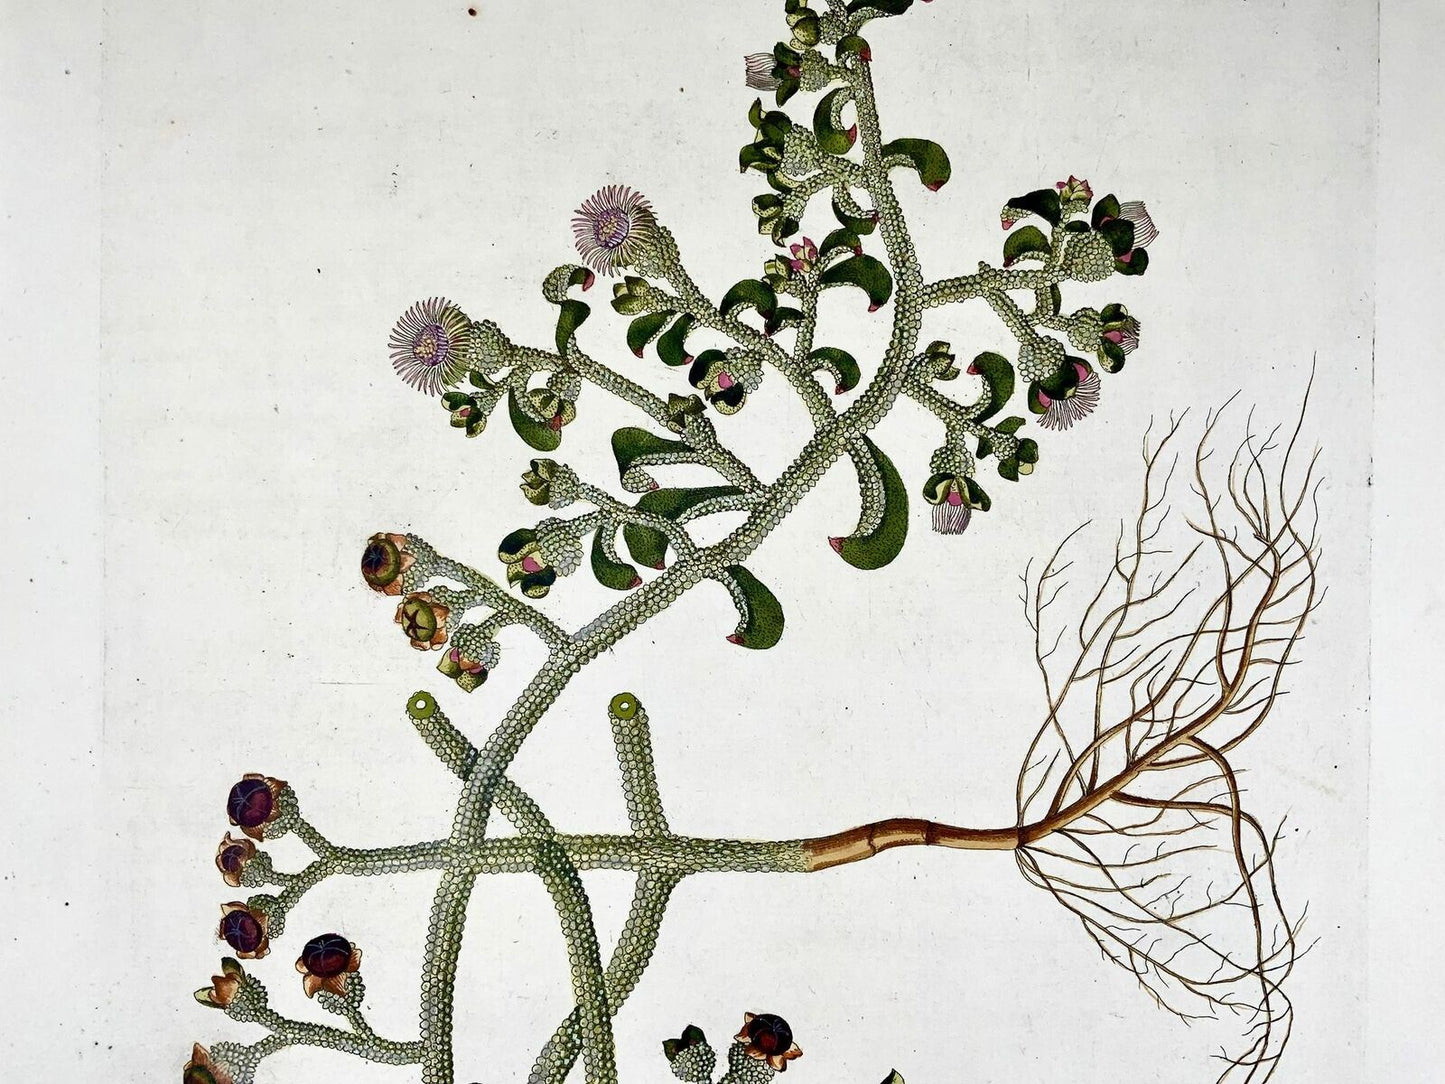 1788 Pianta del ghiaccio, botanica, JJ Plenck, Icones plantarum, folio di 45 cm colorato a mano